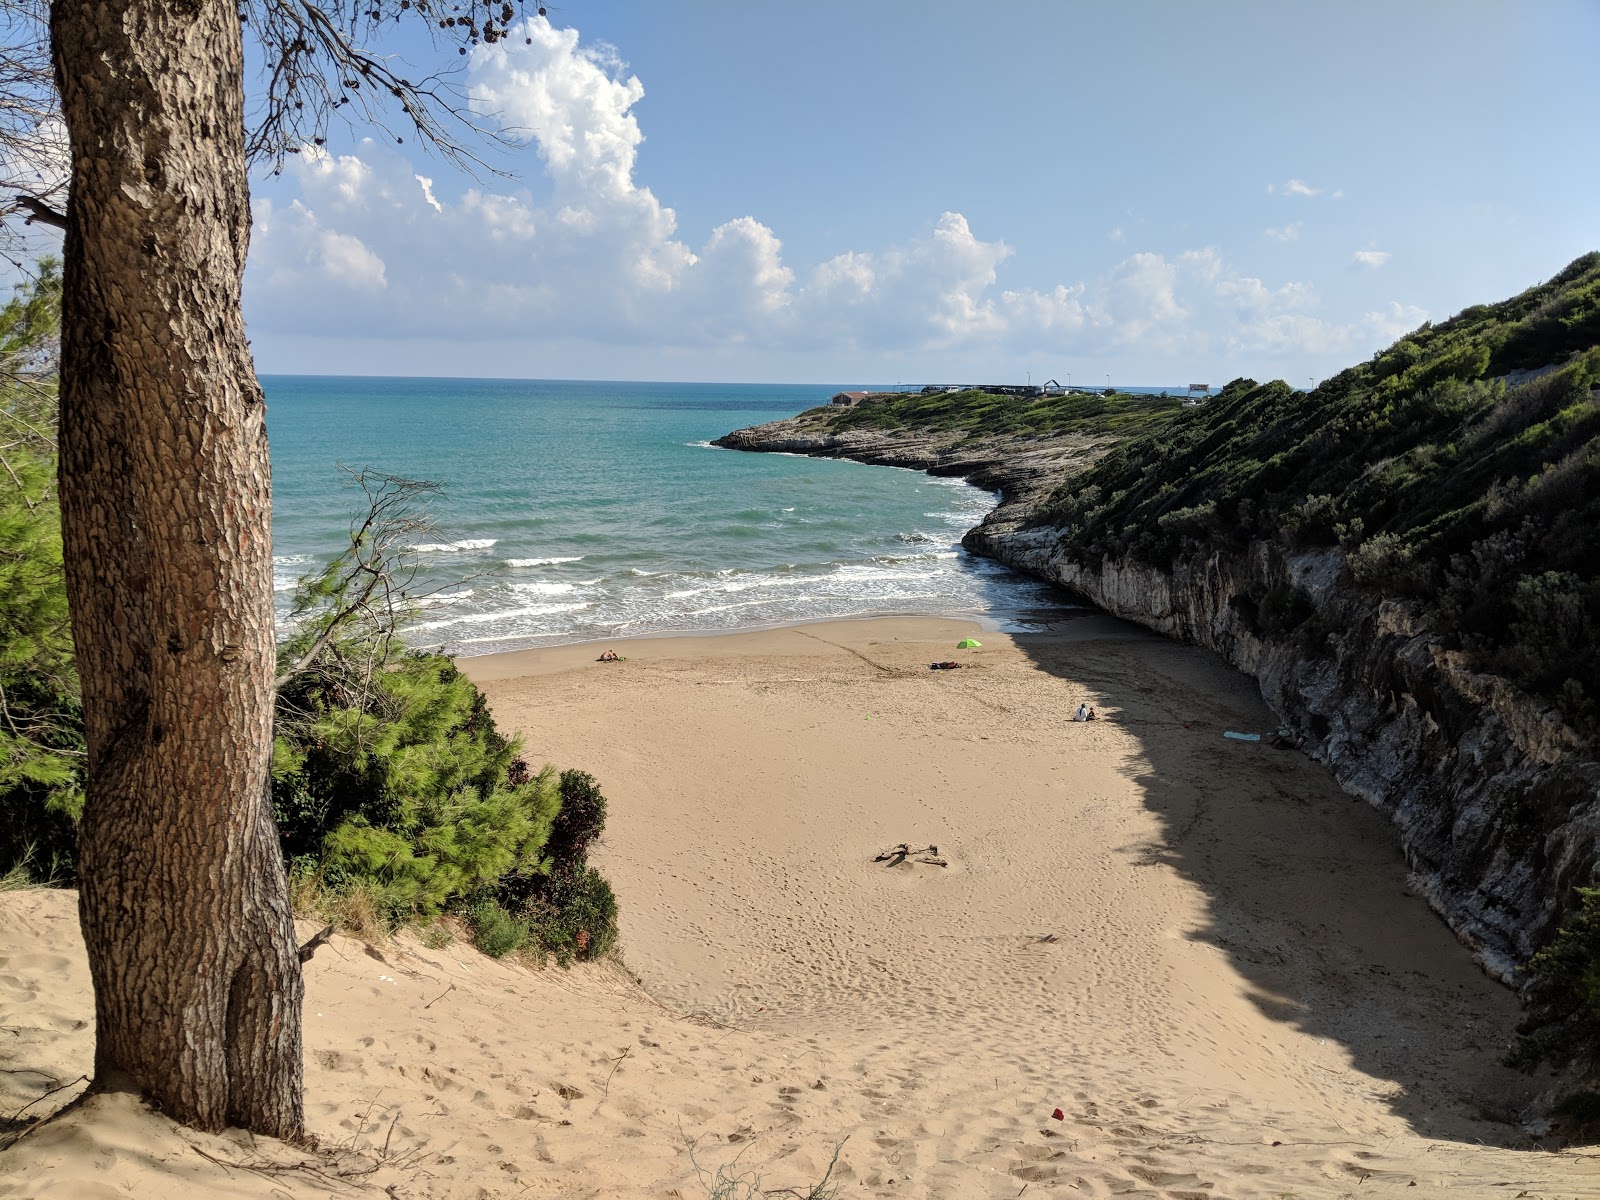 Spiaggia Stretta'in fotoğrafı i̇nce kahverengi kum yüzey ile